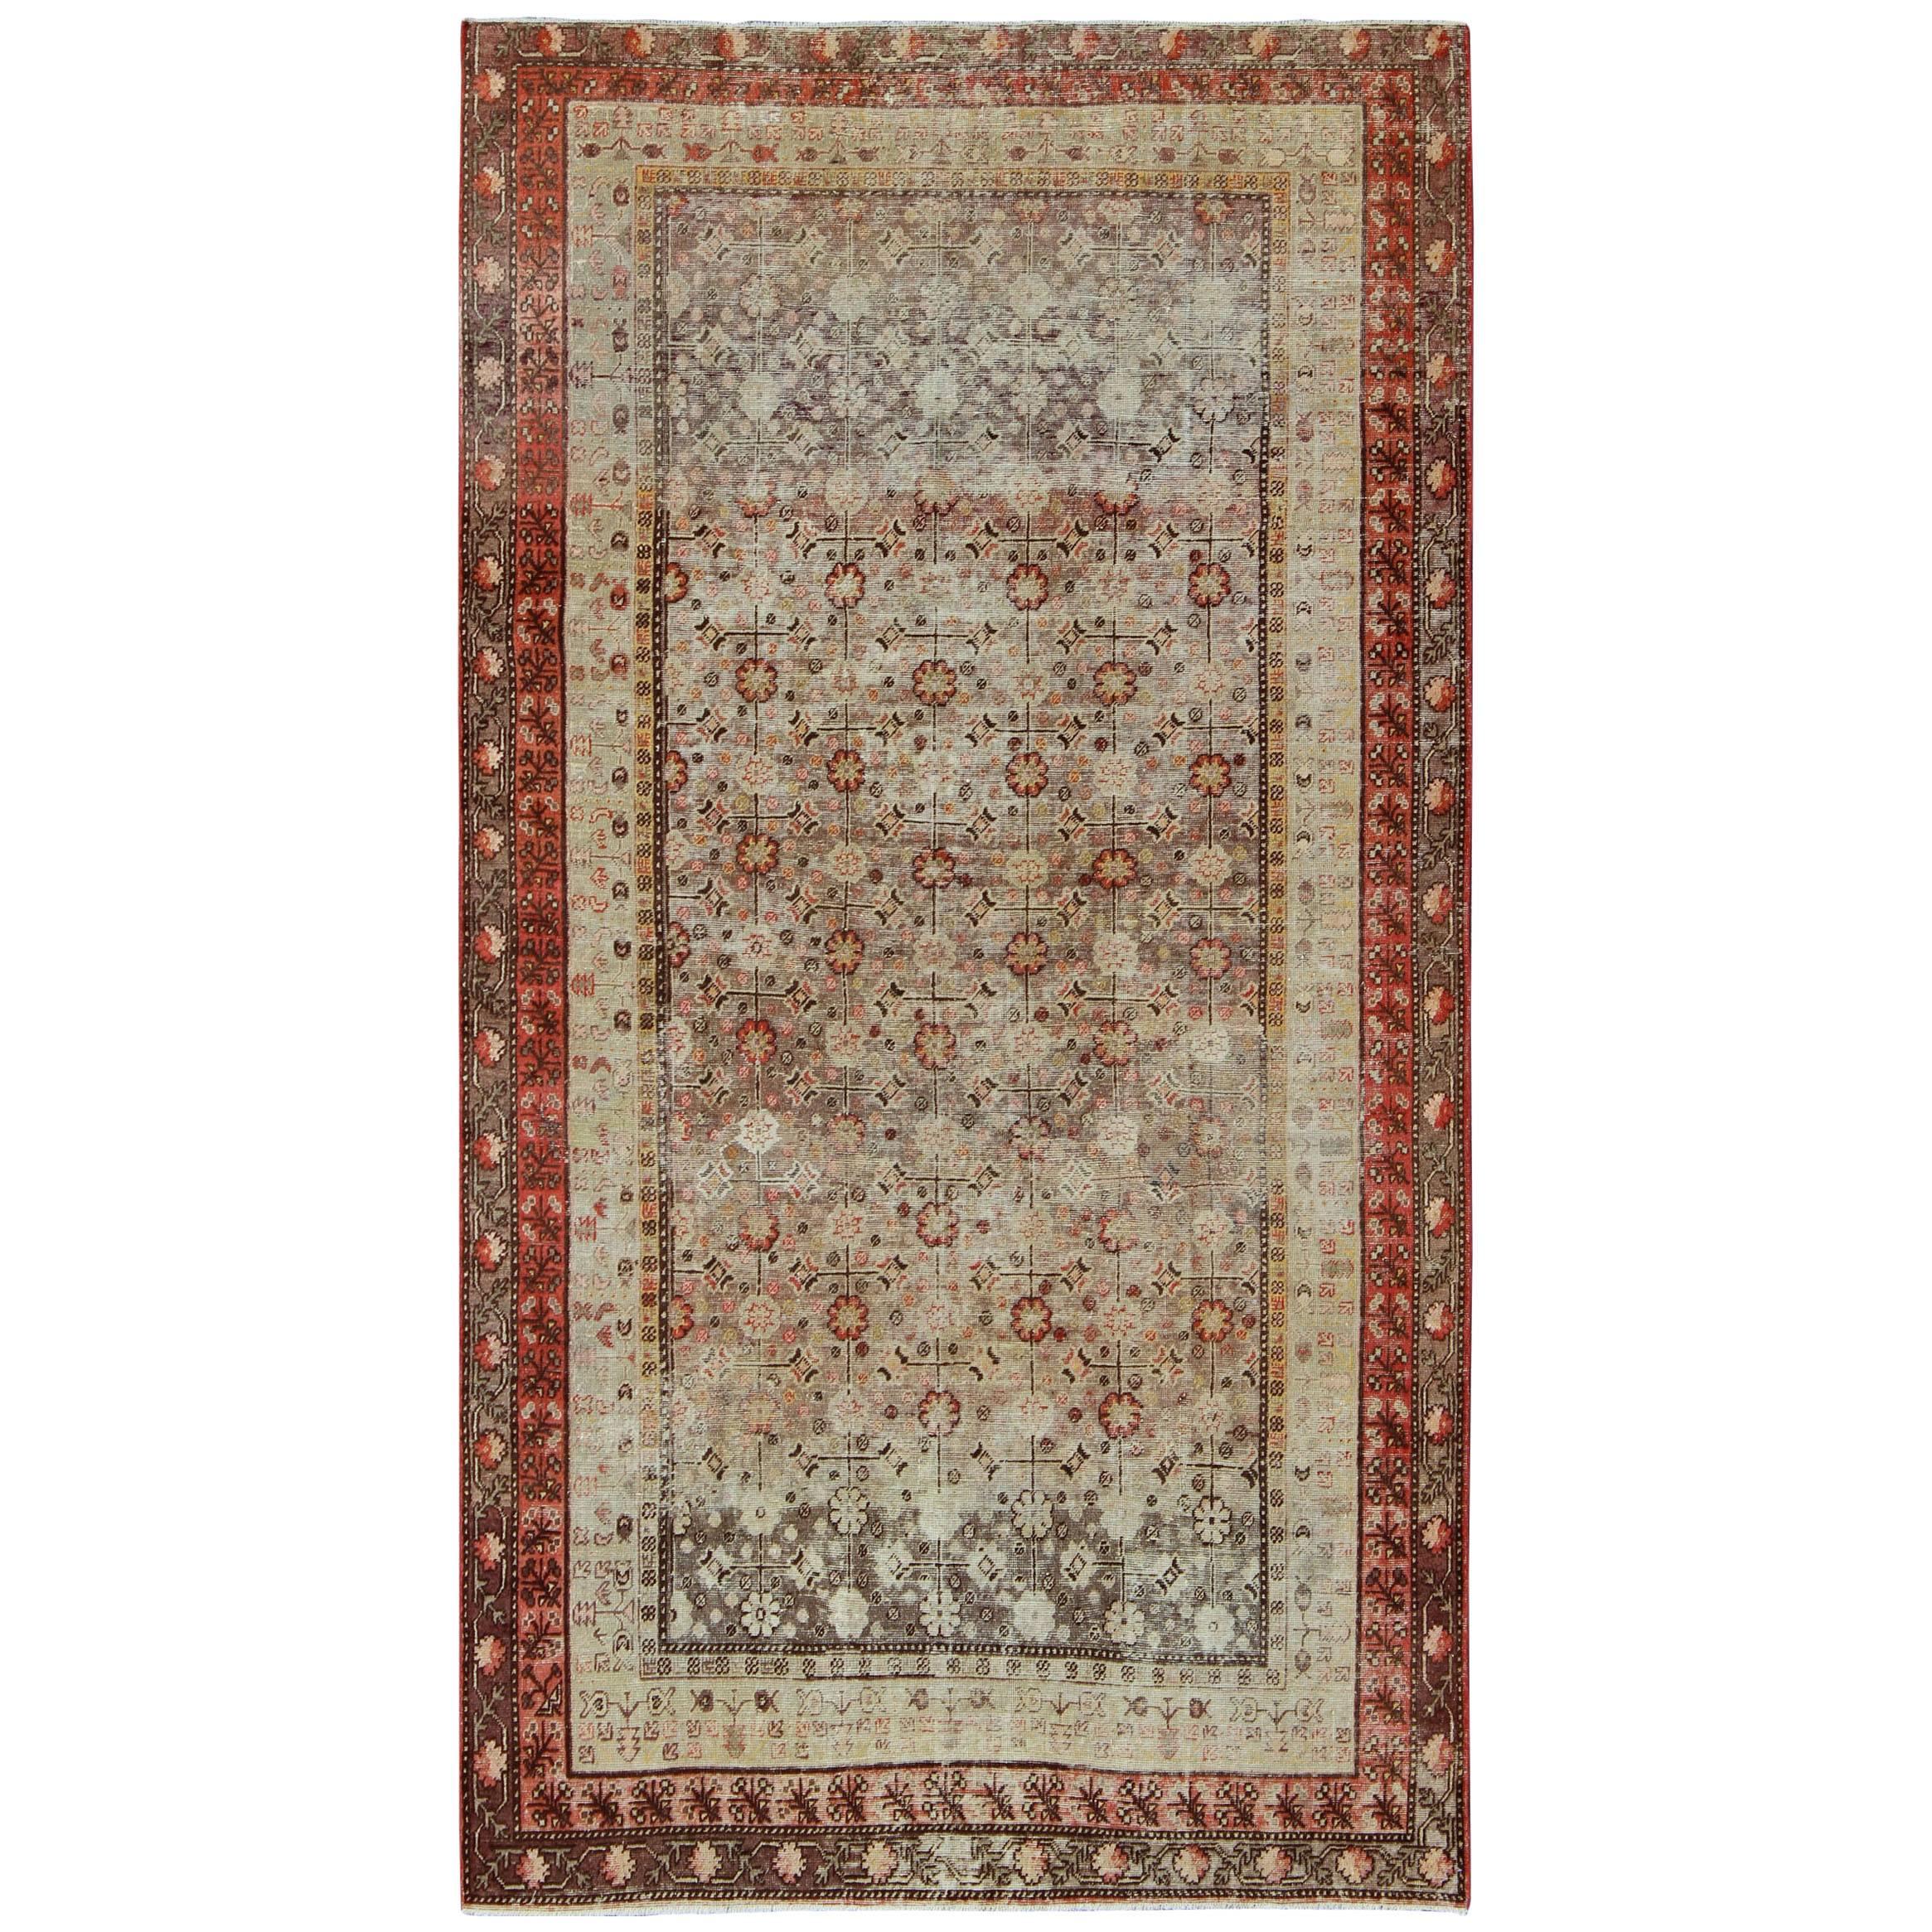 Magnifique tapis Khotan ancien avec un motif floral sub géométrique complexe sur toute sa surface